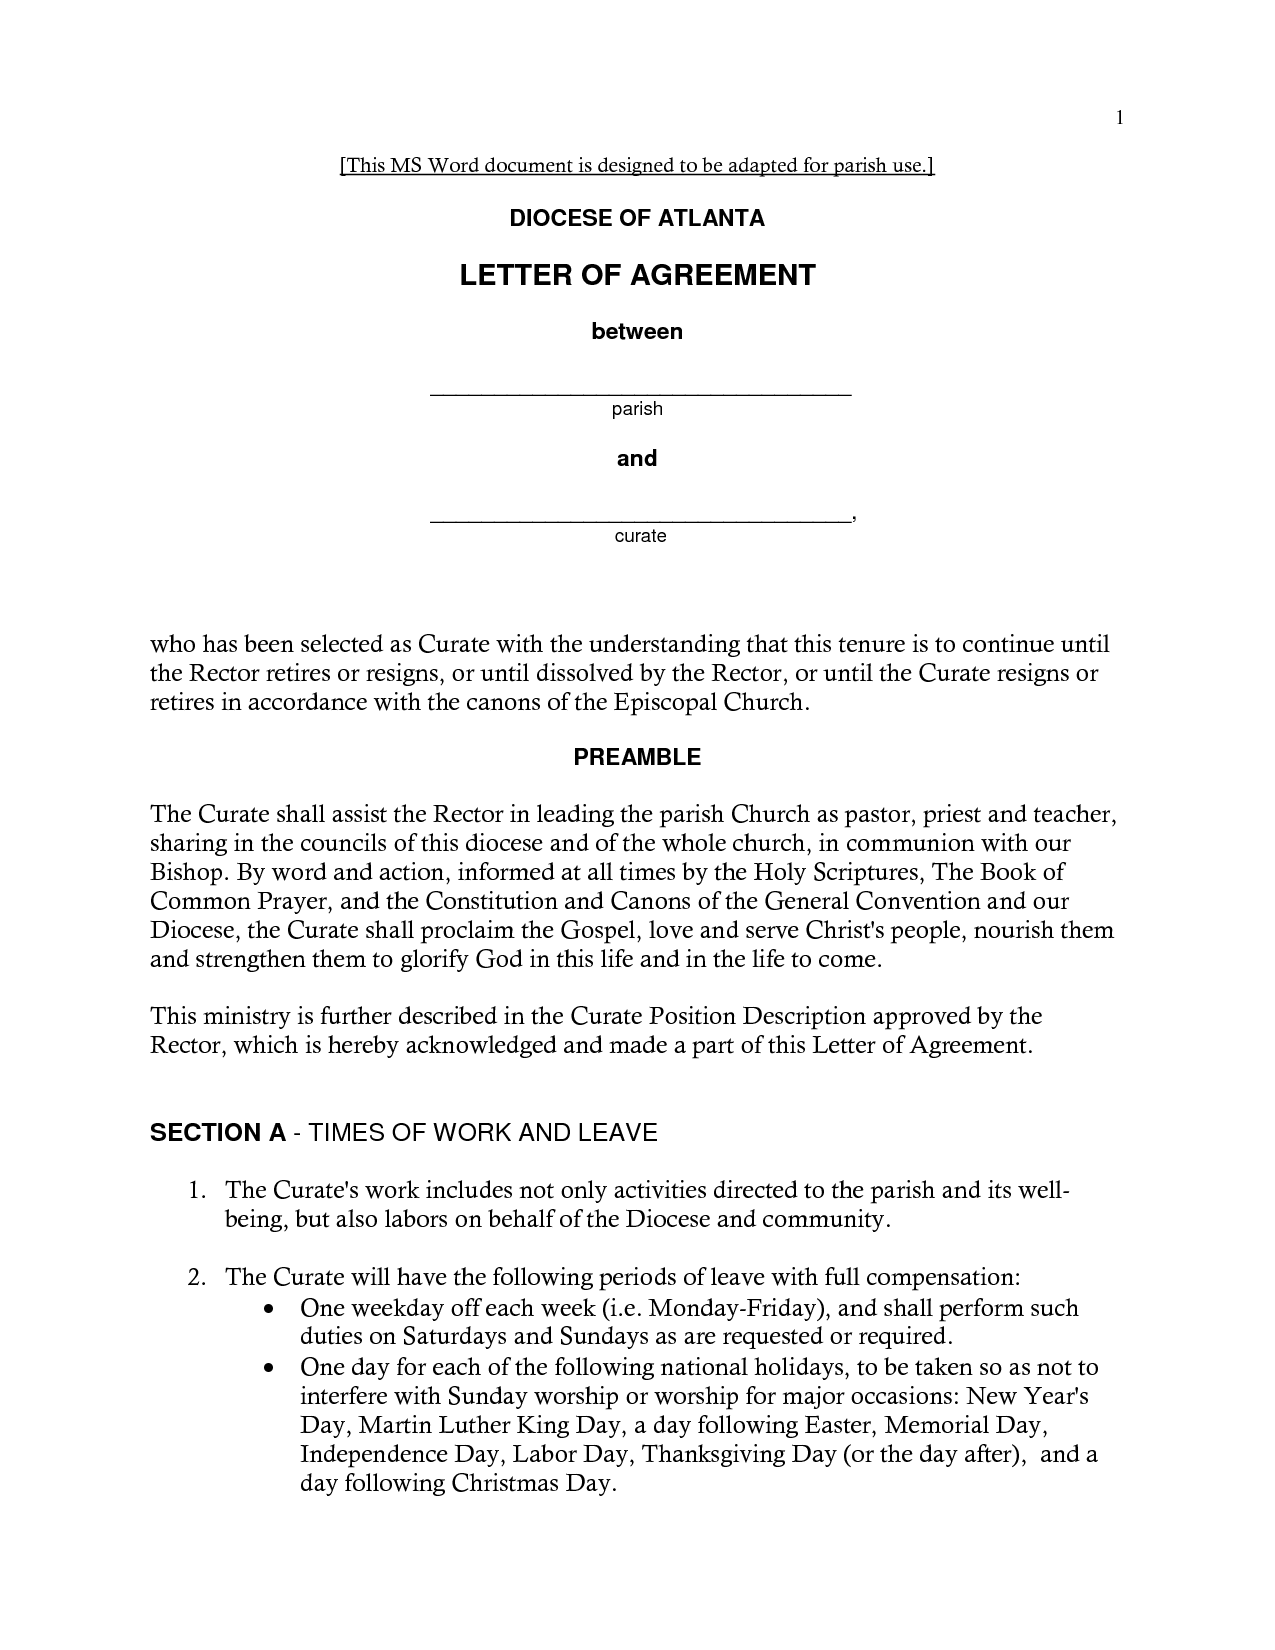 Sample letter of loan agreement: Sample letter of agreement pbs 